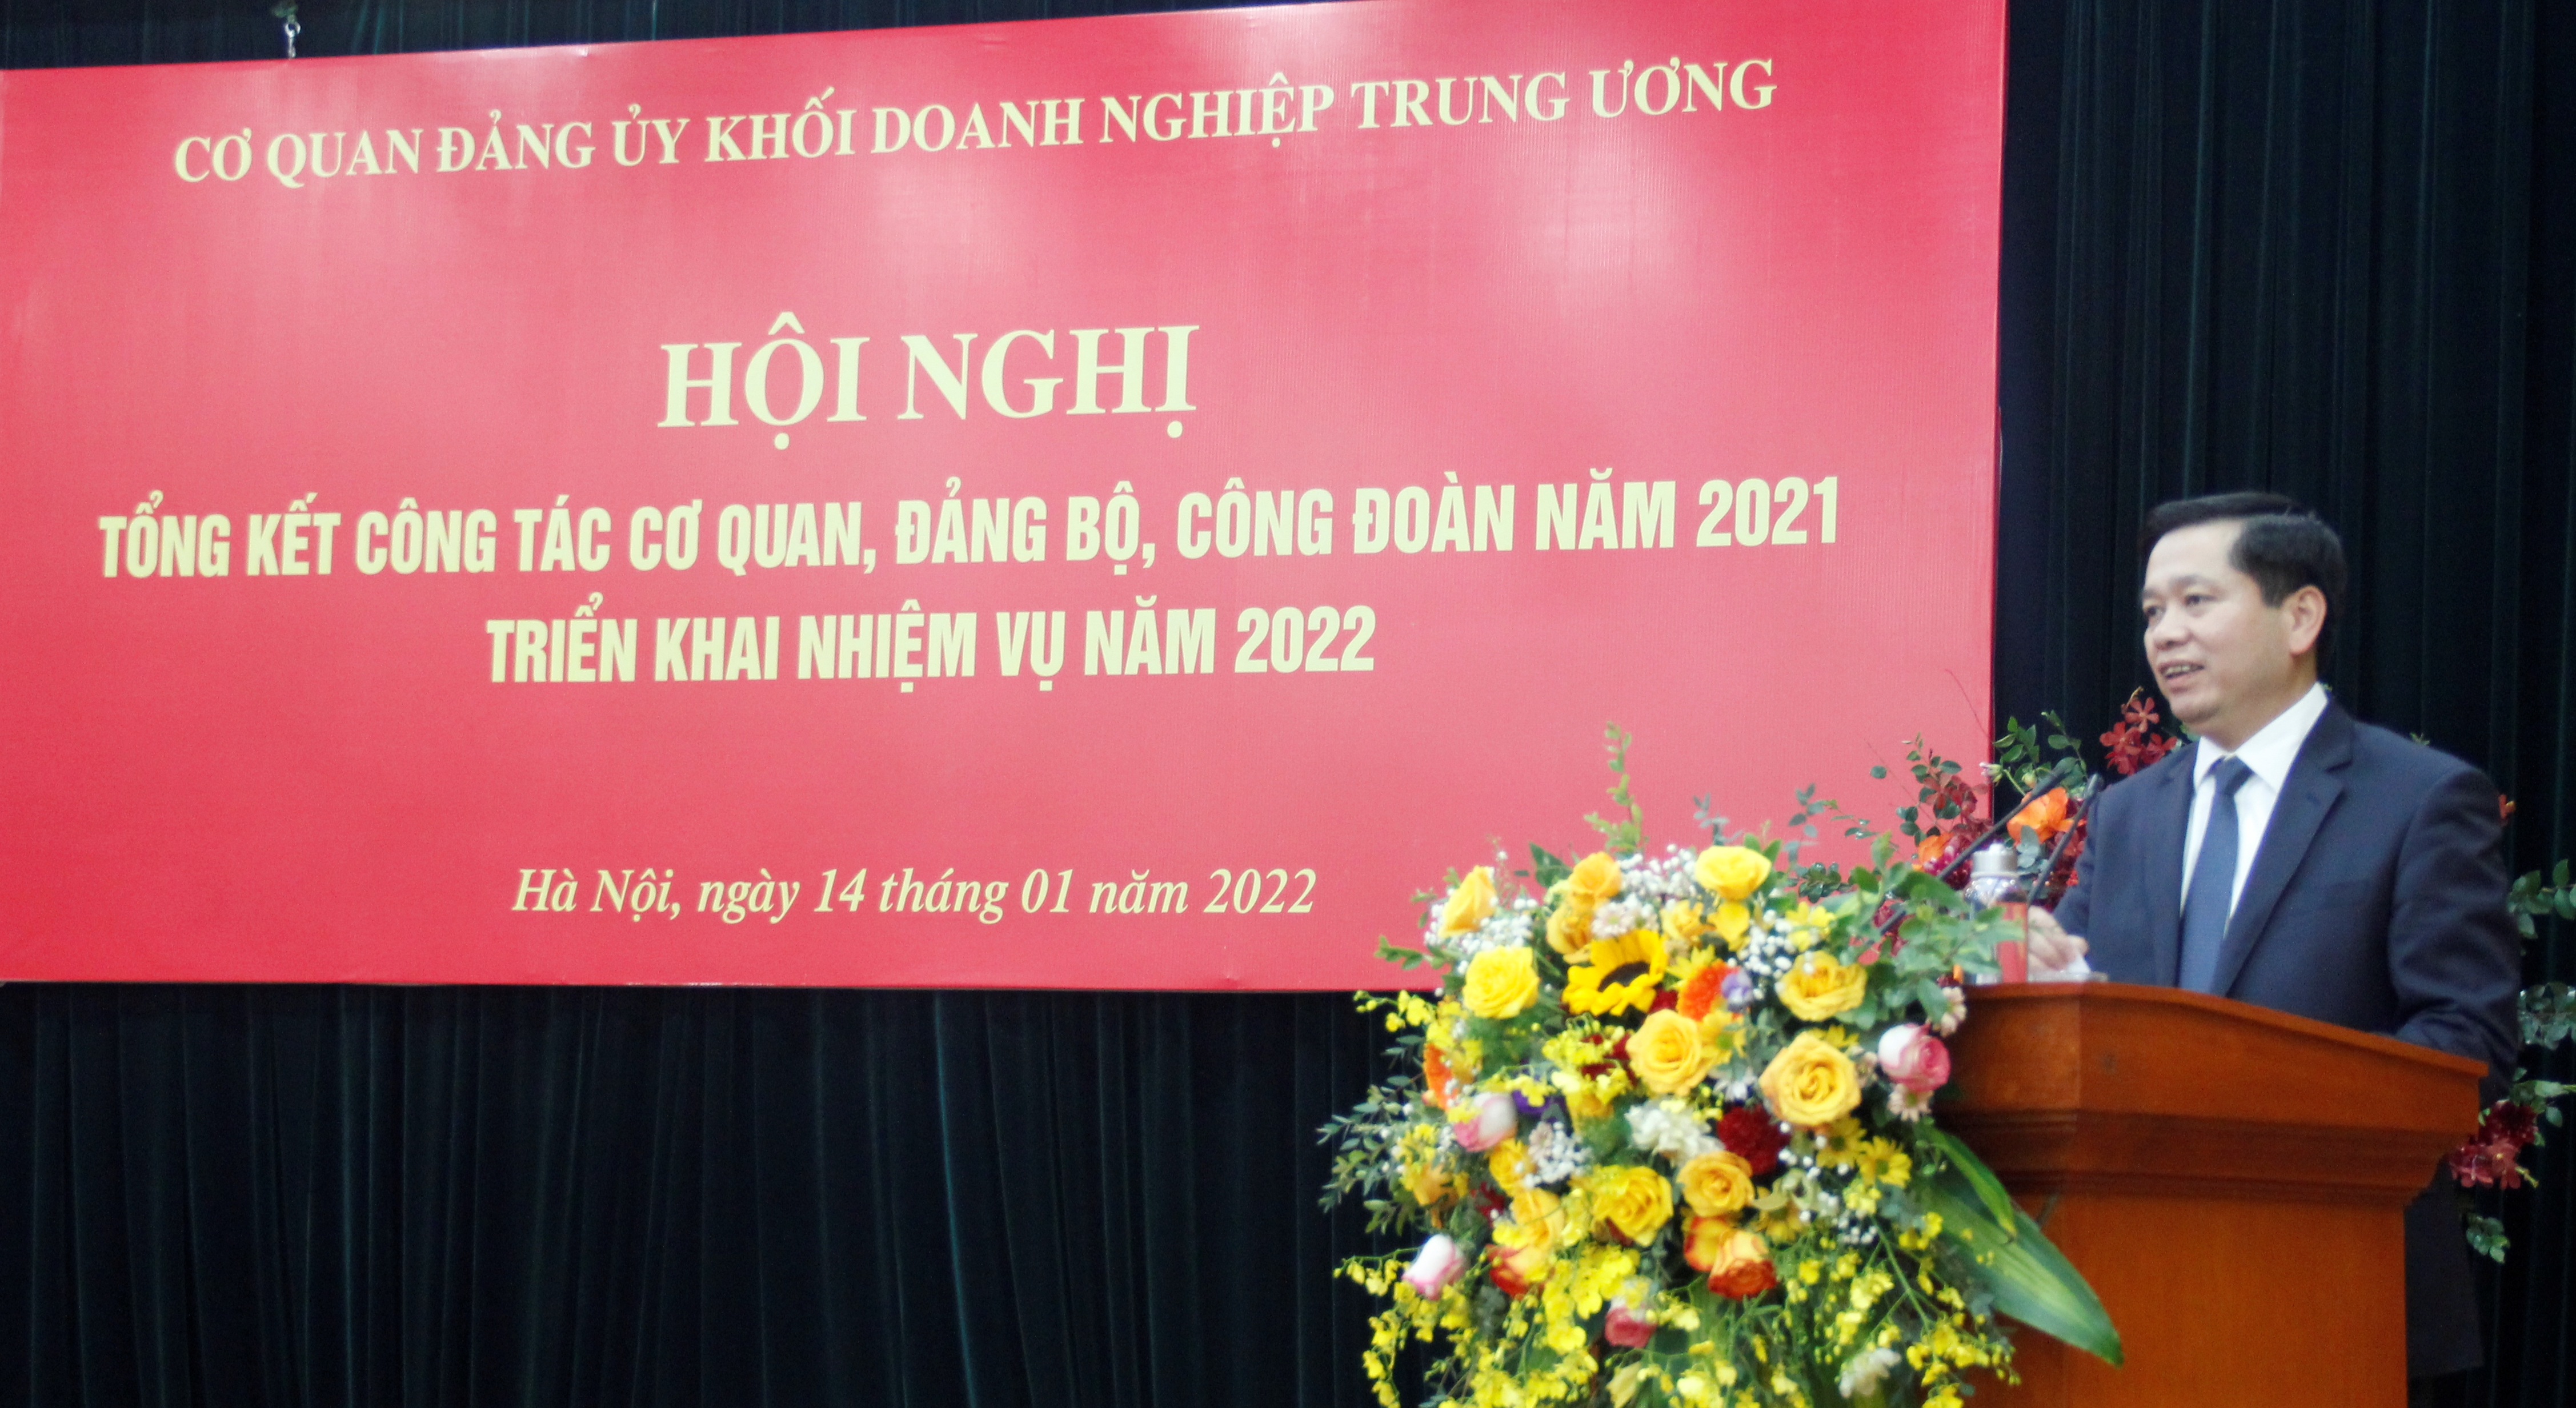 Đồng chí Nguyễn Long Hải, Ủy viên dự khuyết BCH Trung ương Đảng, Bí thư Đảng ủy Khối, Thủ trưởng Cơ quan Đảng ủy Khối phát biểu chỉ đạo Hội nghị.